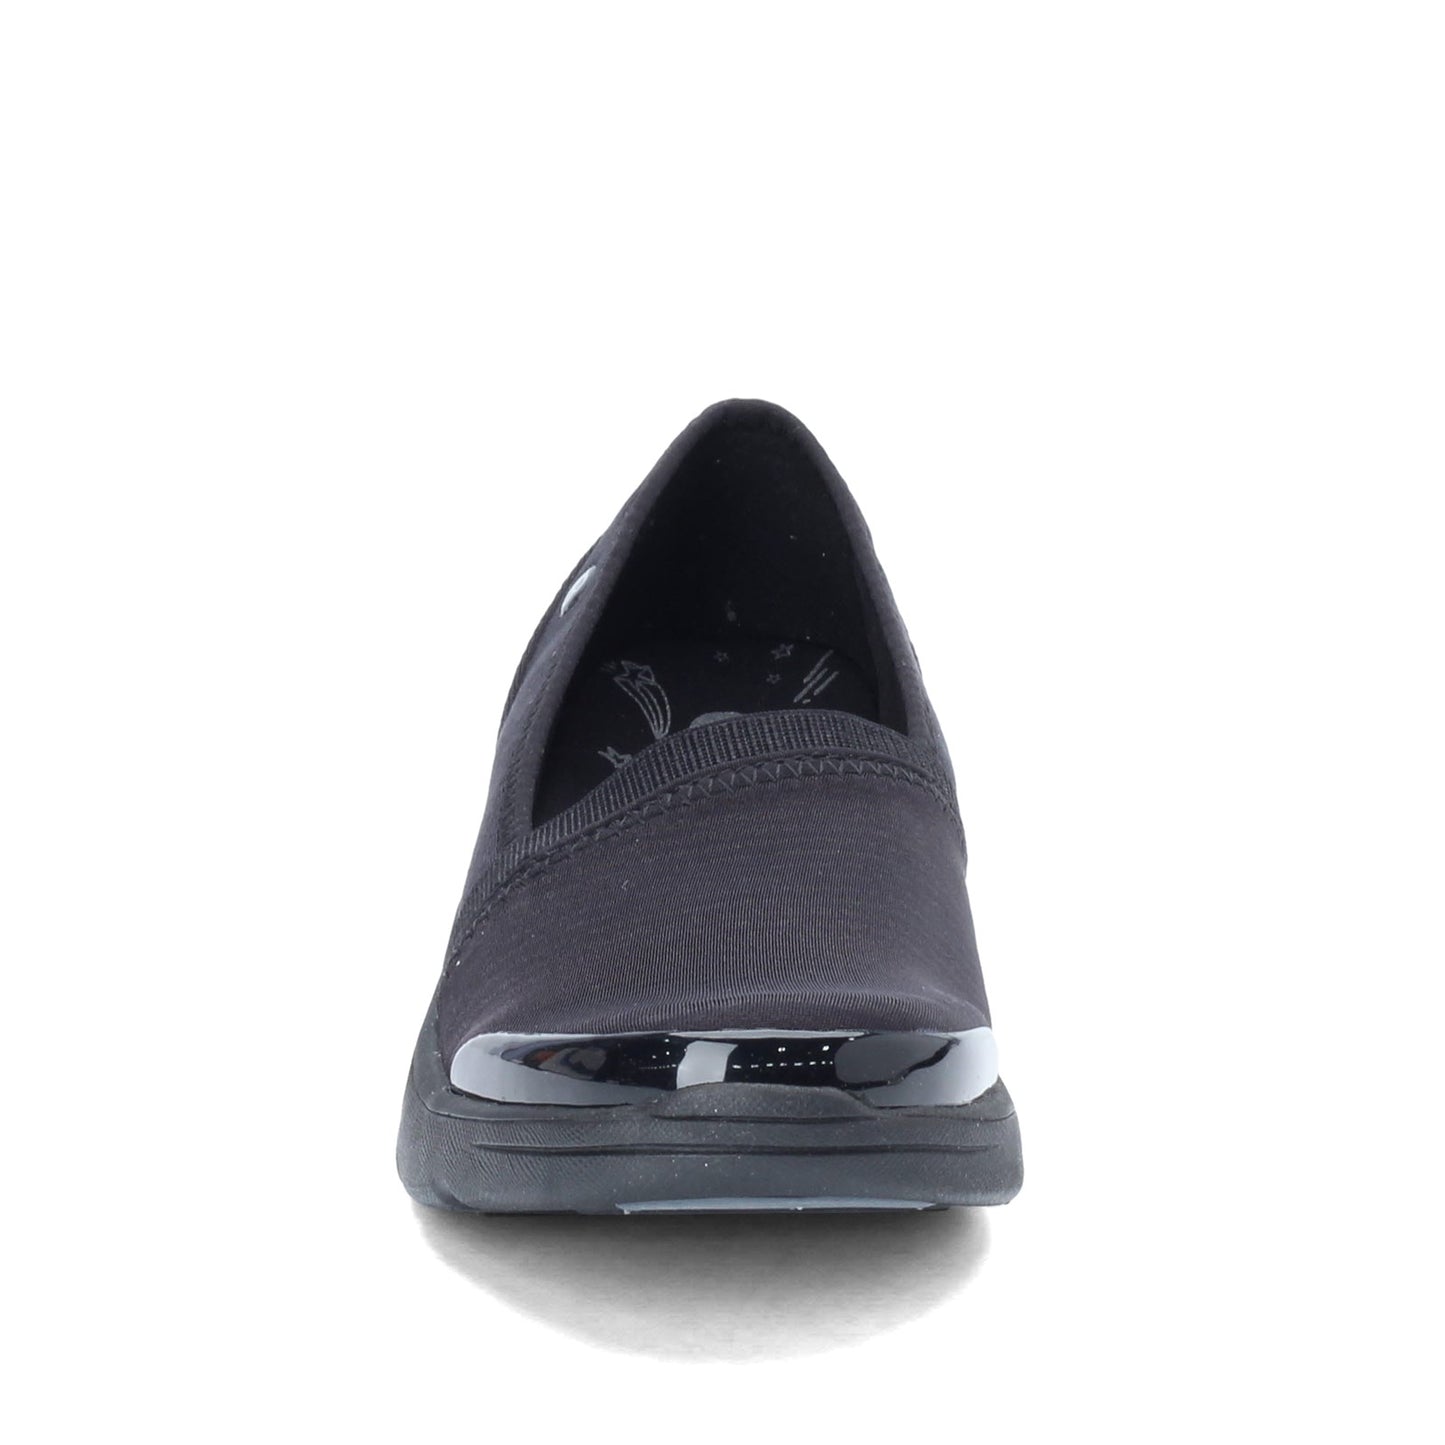 Peltz Shoes  Women's BZees Lollipop Slip-On BLACK F4093F3001